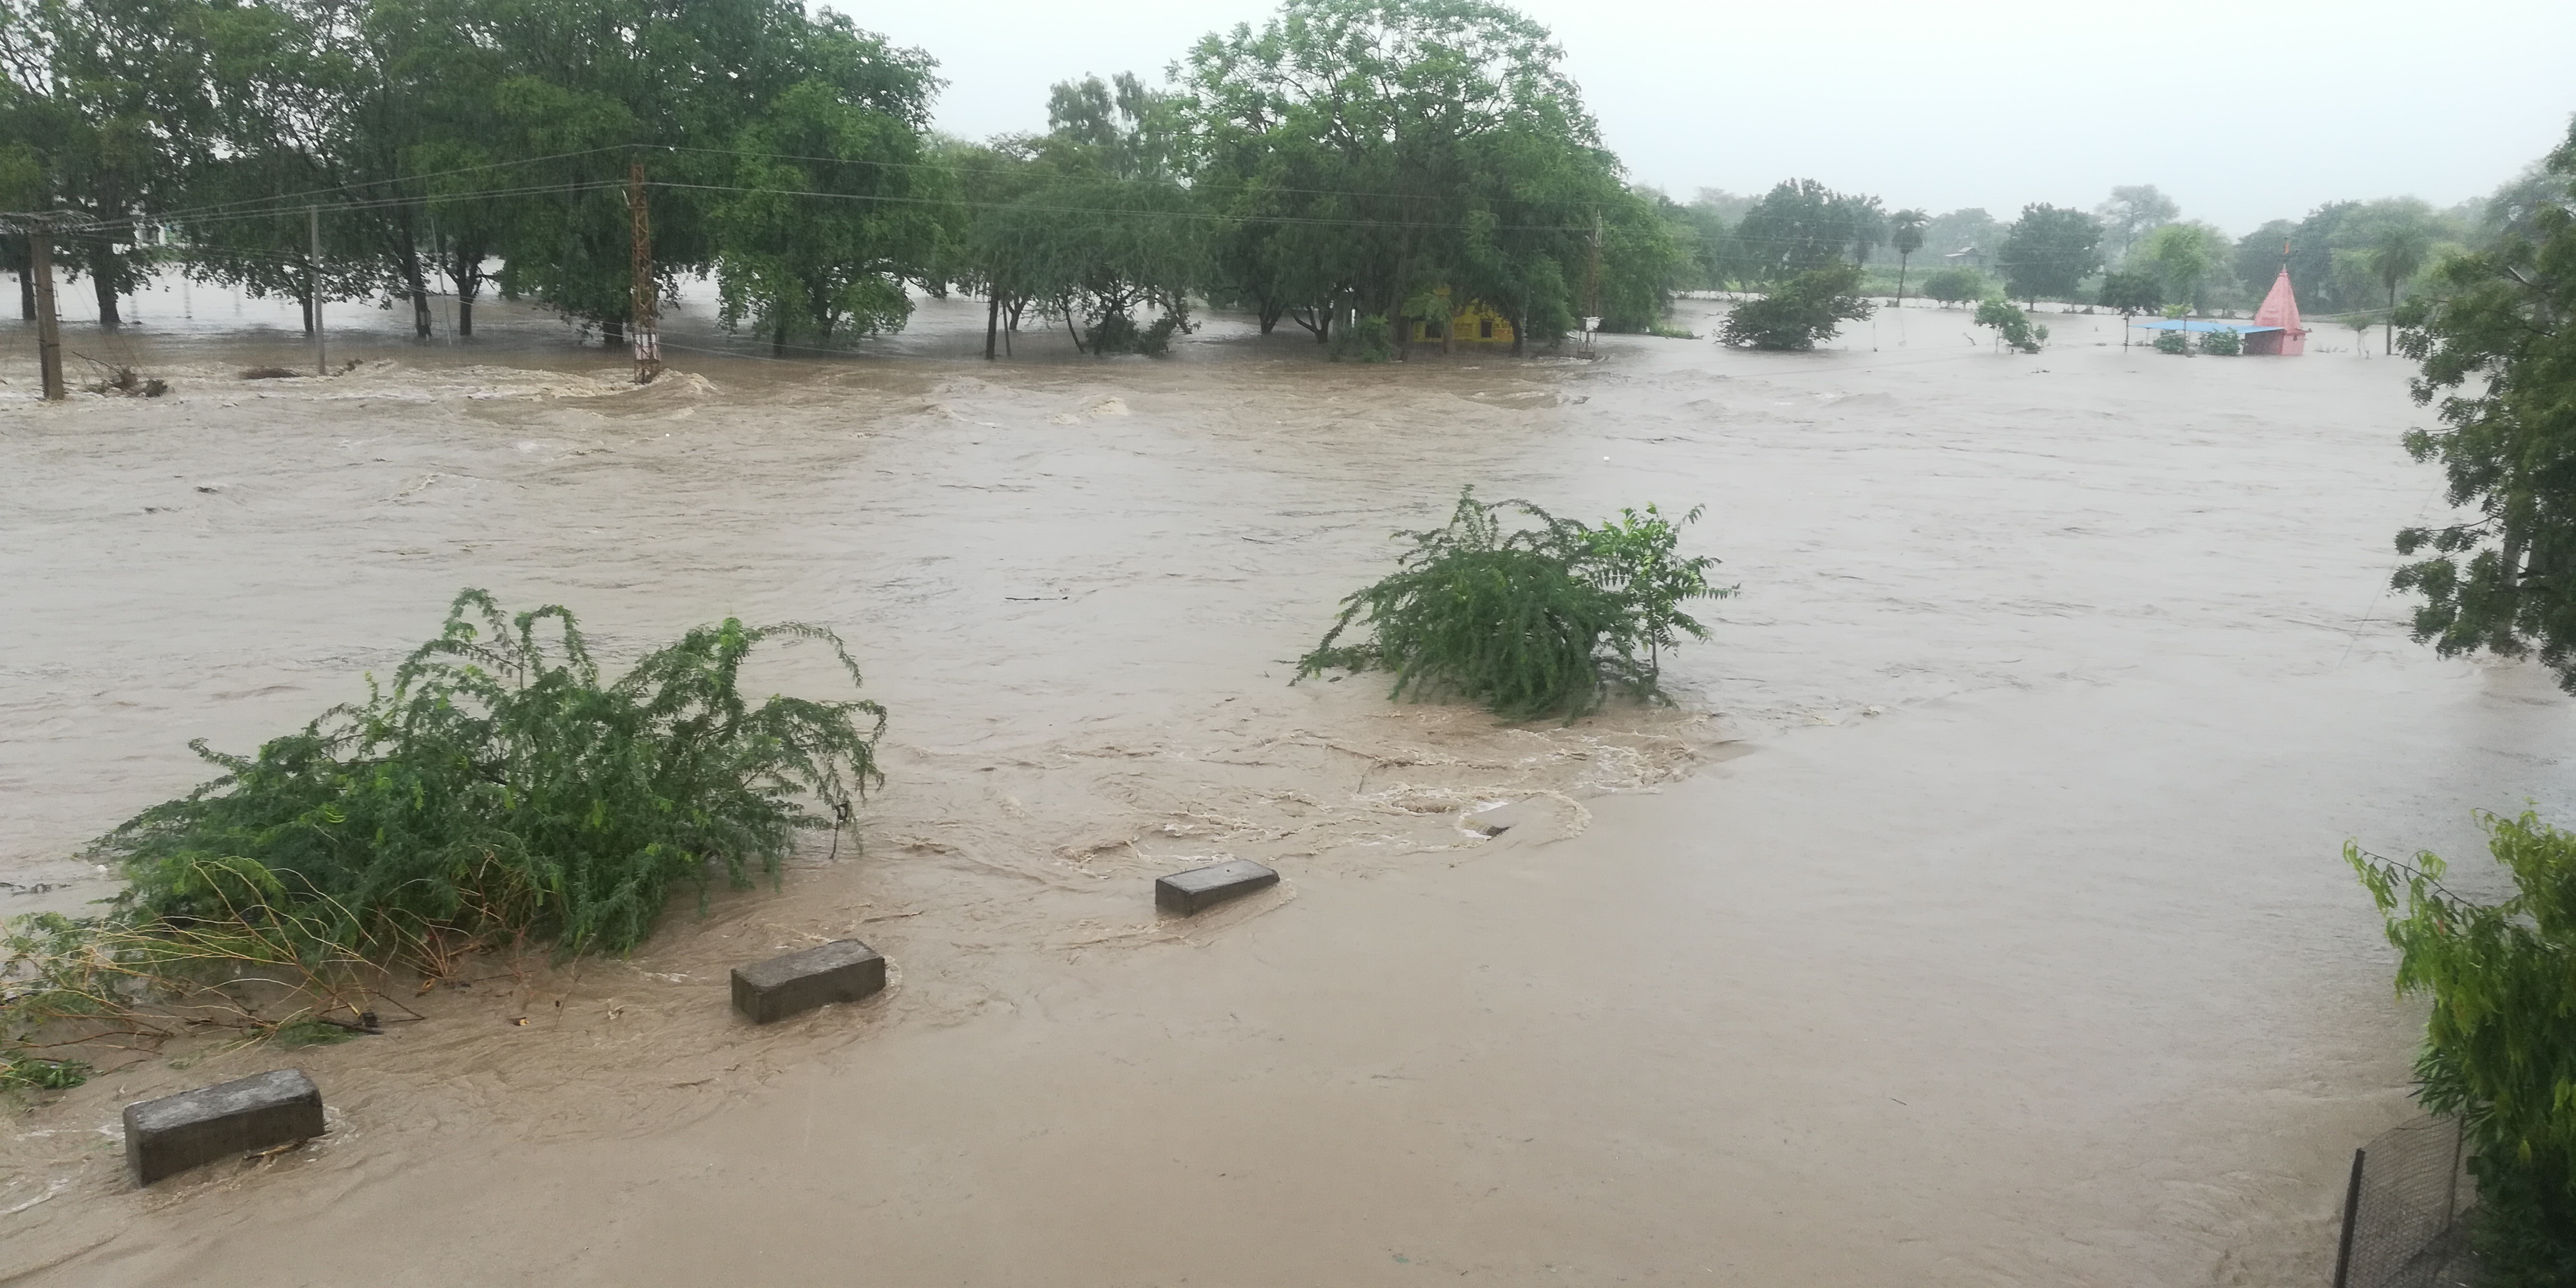 Heavy rain in Jhalawar....चम्बल नदी के सबसे बड़े बांध गांधी सागर में पानी की जबर्दस्त आवक